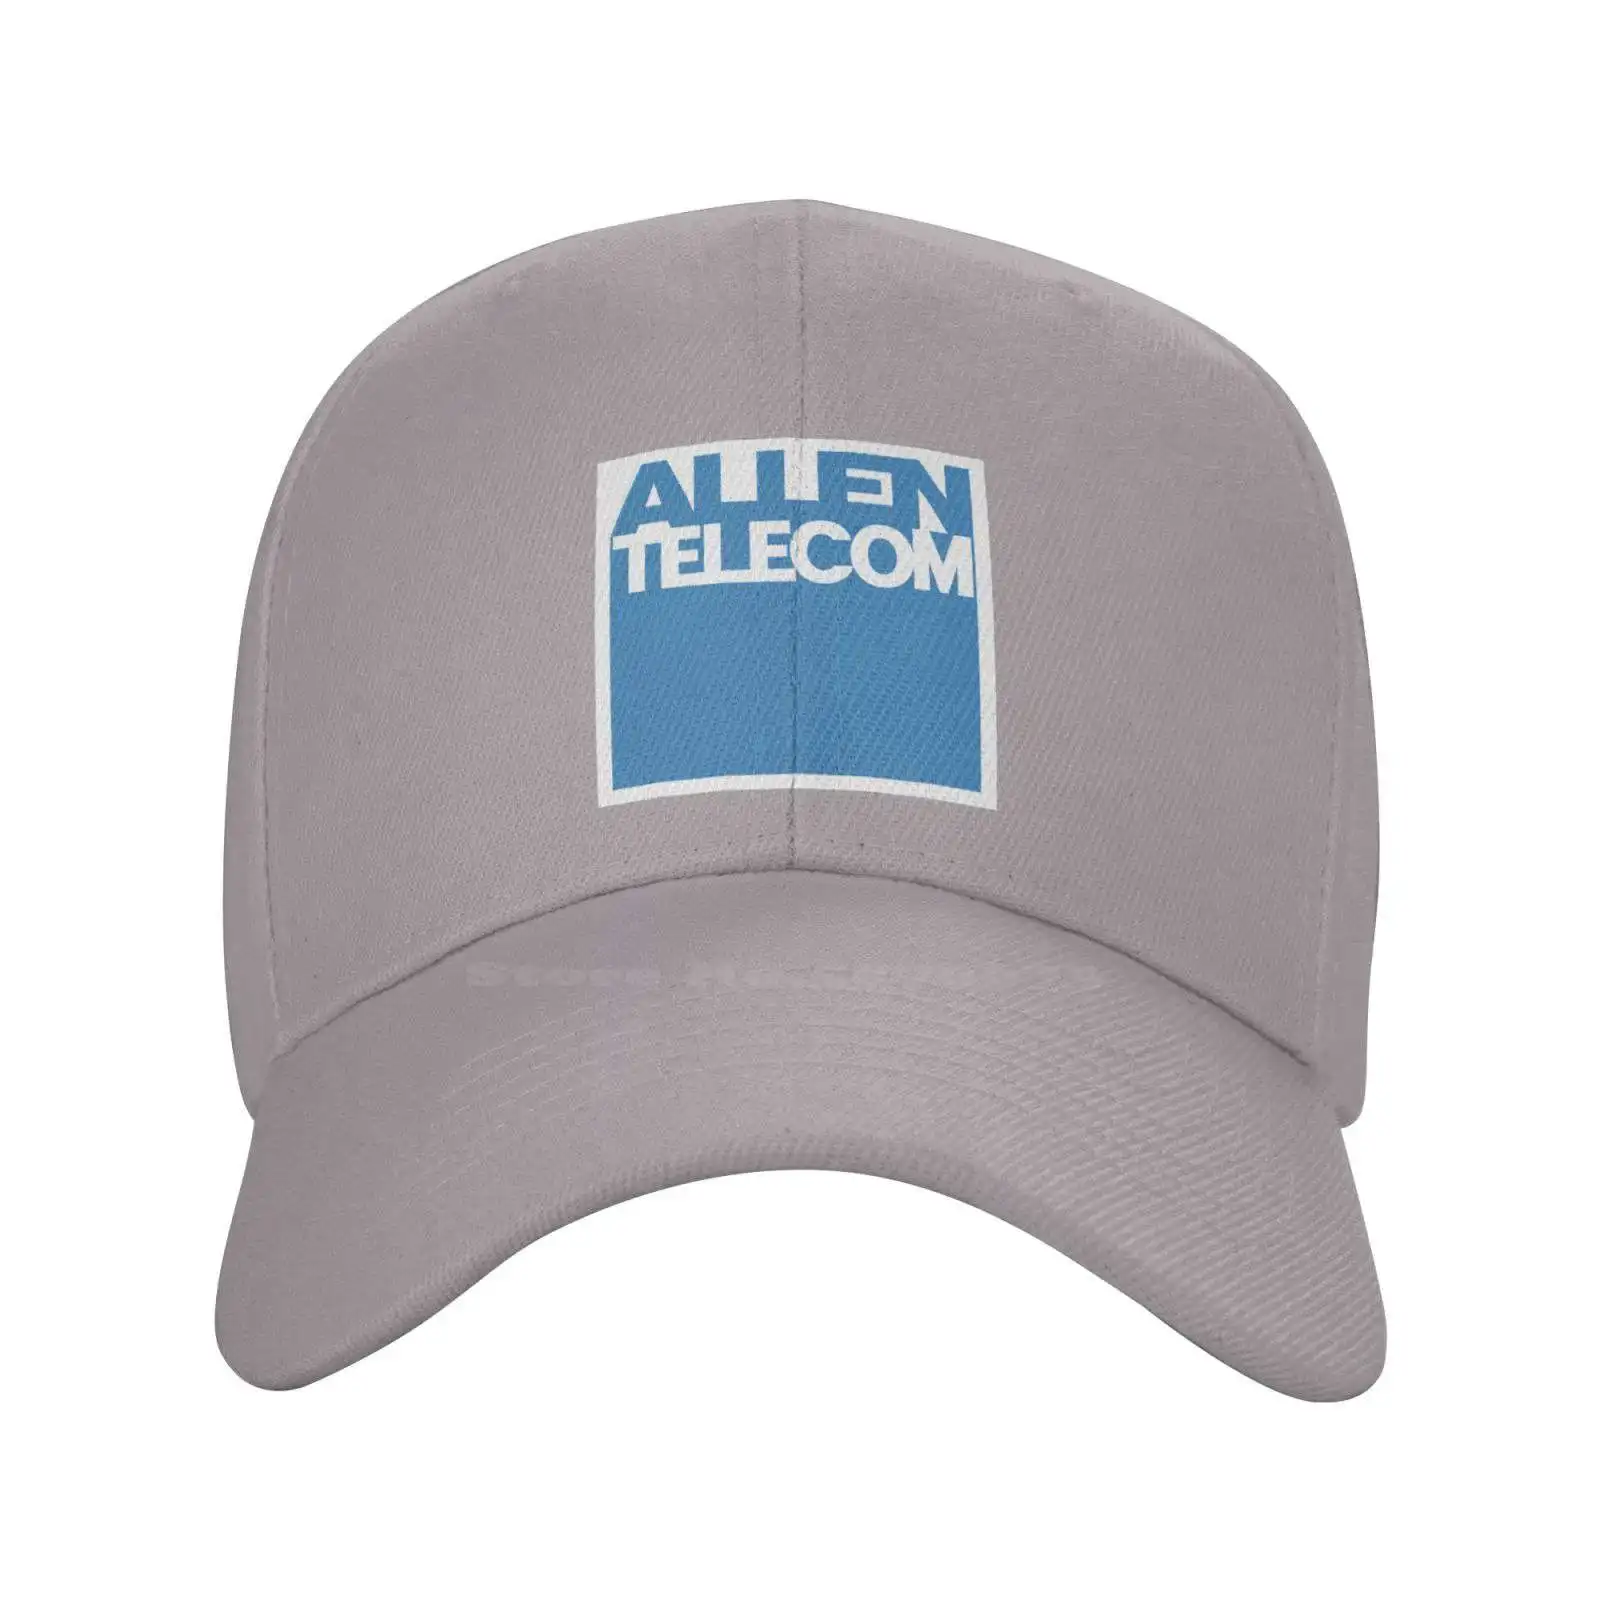 Аллен качественный логотип Телеком моды джинсовая шапка вязаная шляпа бейсболка 1